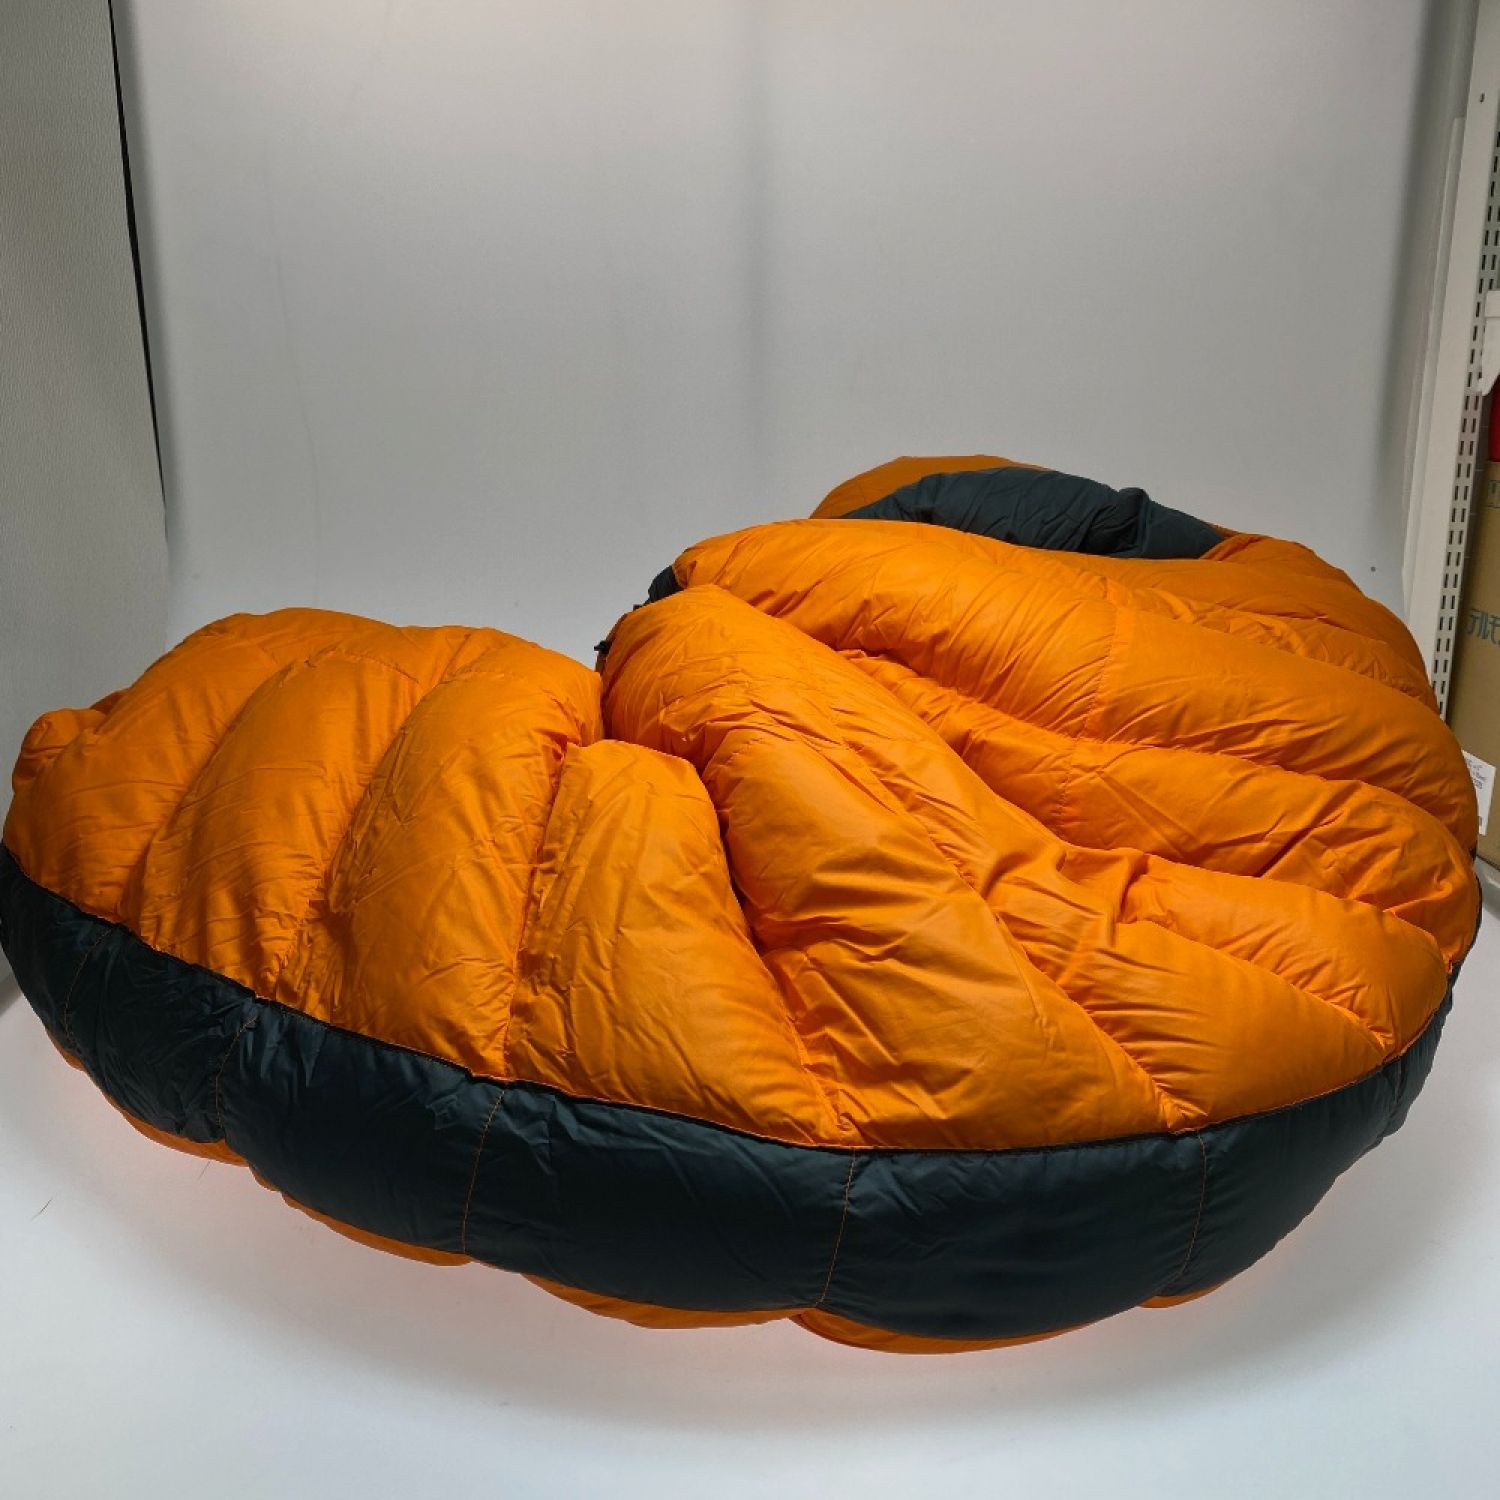 ヴァランドレ ローツェ1100S 厳冬期用高級シュラフ/寝袋 - 寝袋/寝具 - アウトドア寝具